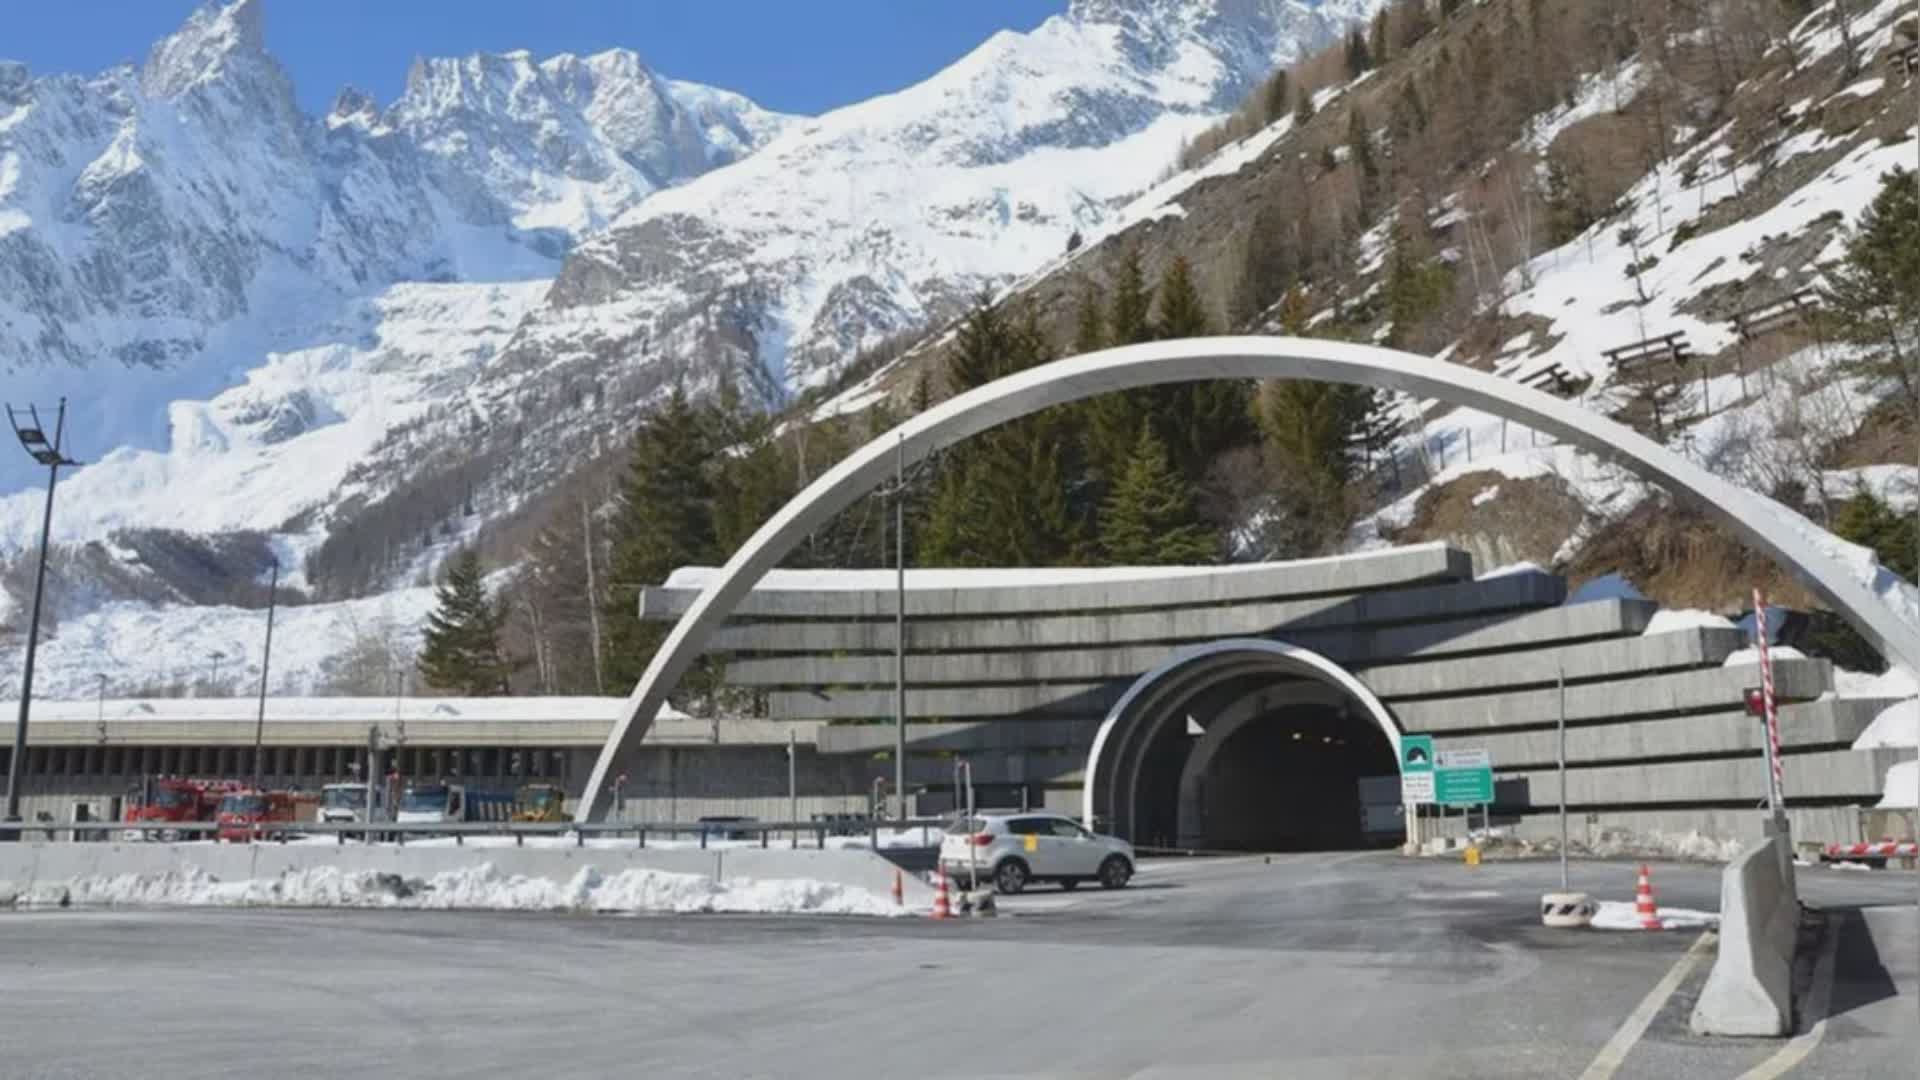 Trasporto merci in crisi, anche a causa del deragliamento del treno in Svizzera. E dal 4 settembre il Traforo del Monte Bianco chiude per 3 mesi...